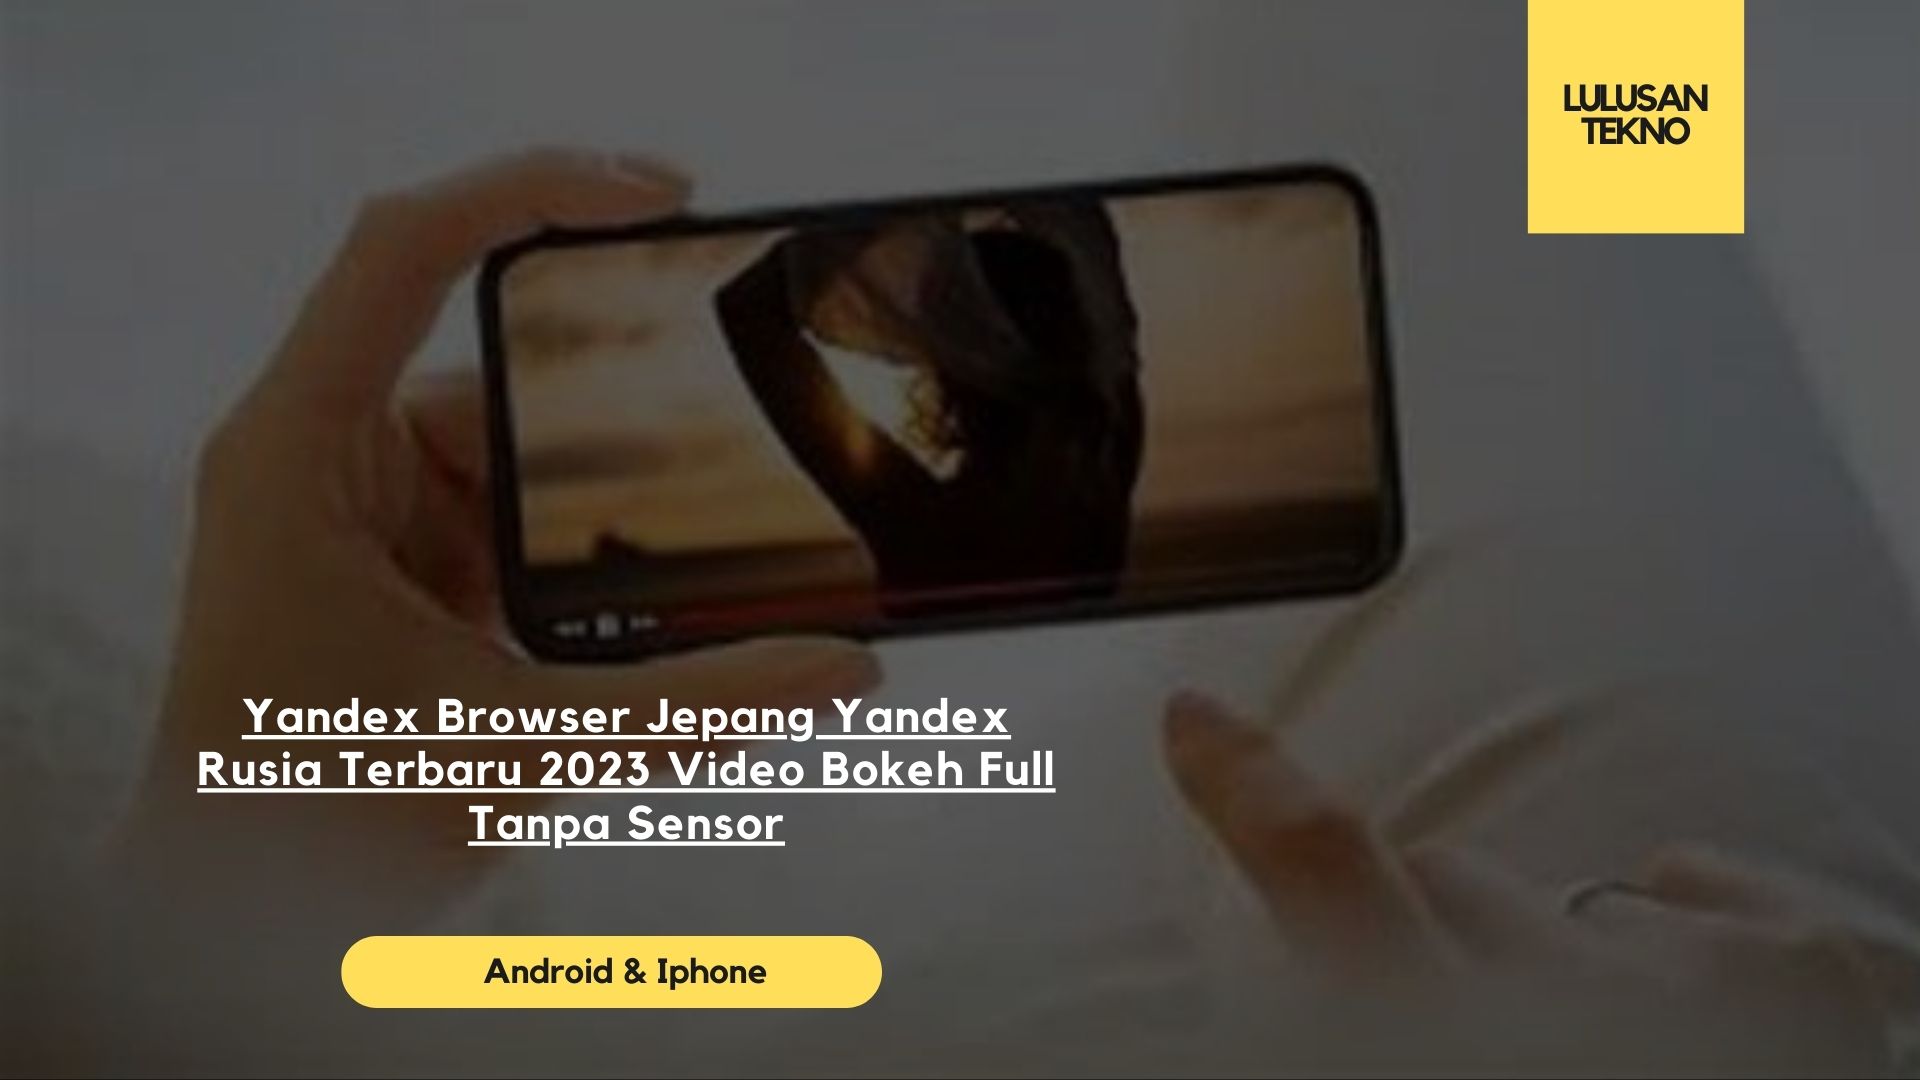 Yandex Browser Jepang Yandex Rusia Terbaru 2023 Video Bokeh Full Tanpa Sensor